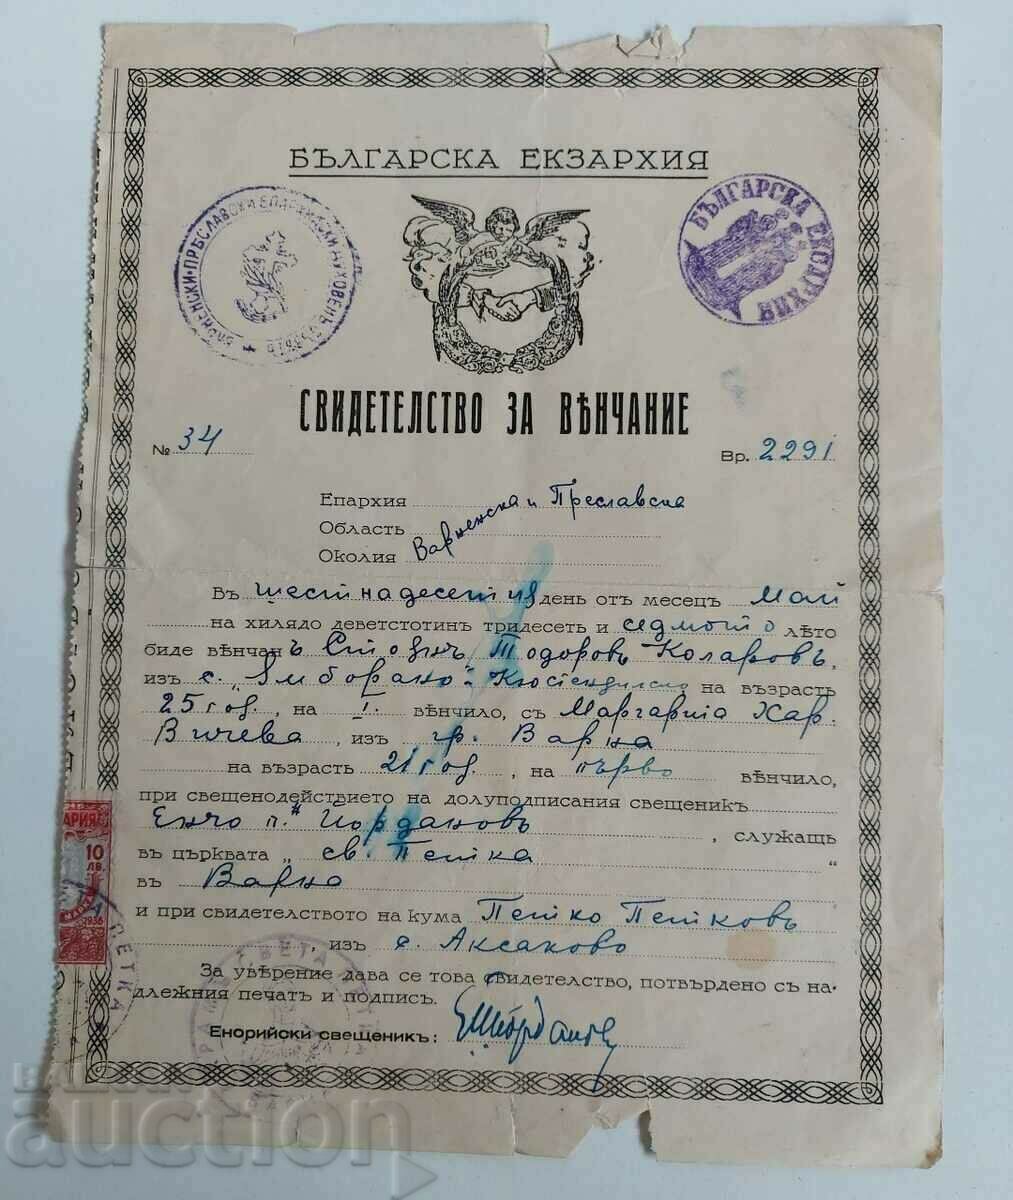 1937 CERTIFICAT DE CĂSĂTORIE